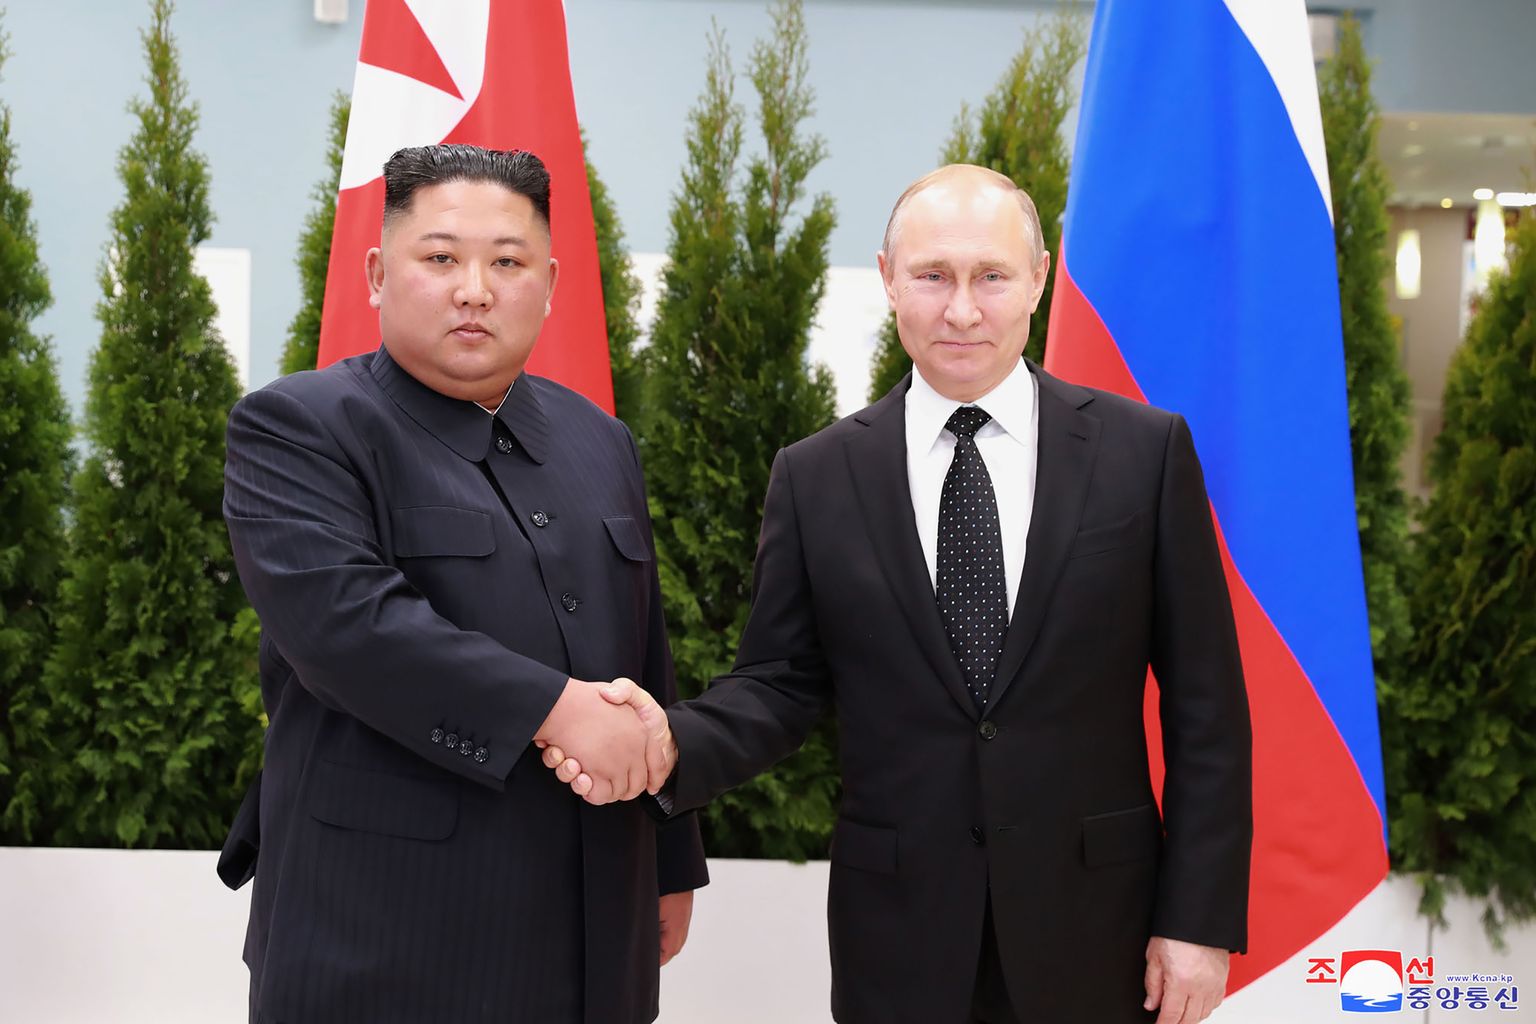 (No kreisās) Ziemeļkorejas līderis Kims Čenuns un Krievijas diktators Vladimirs Putins. 2019. gads.